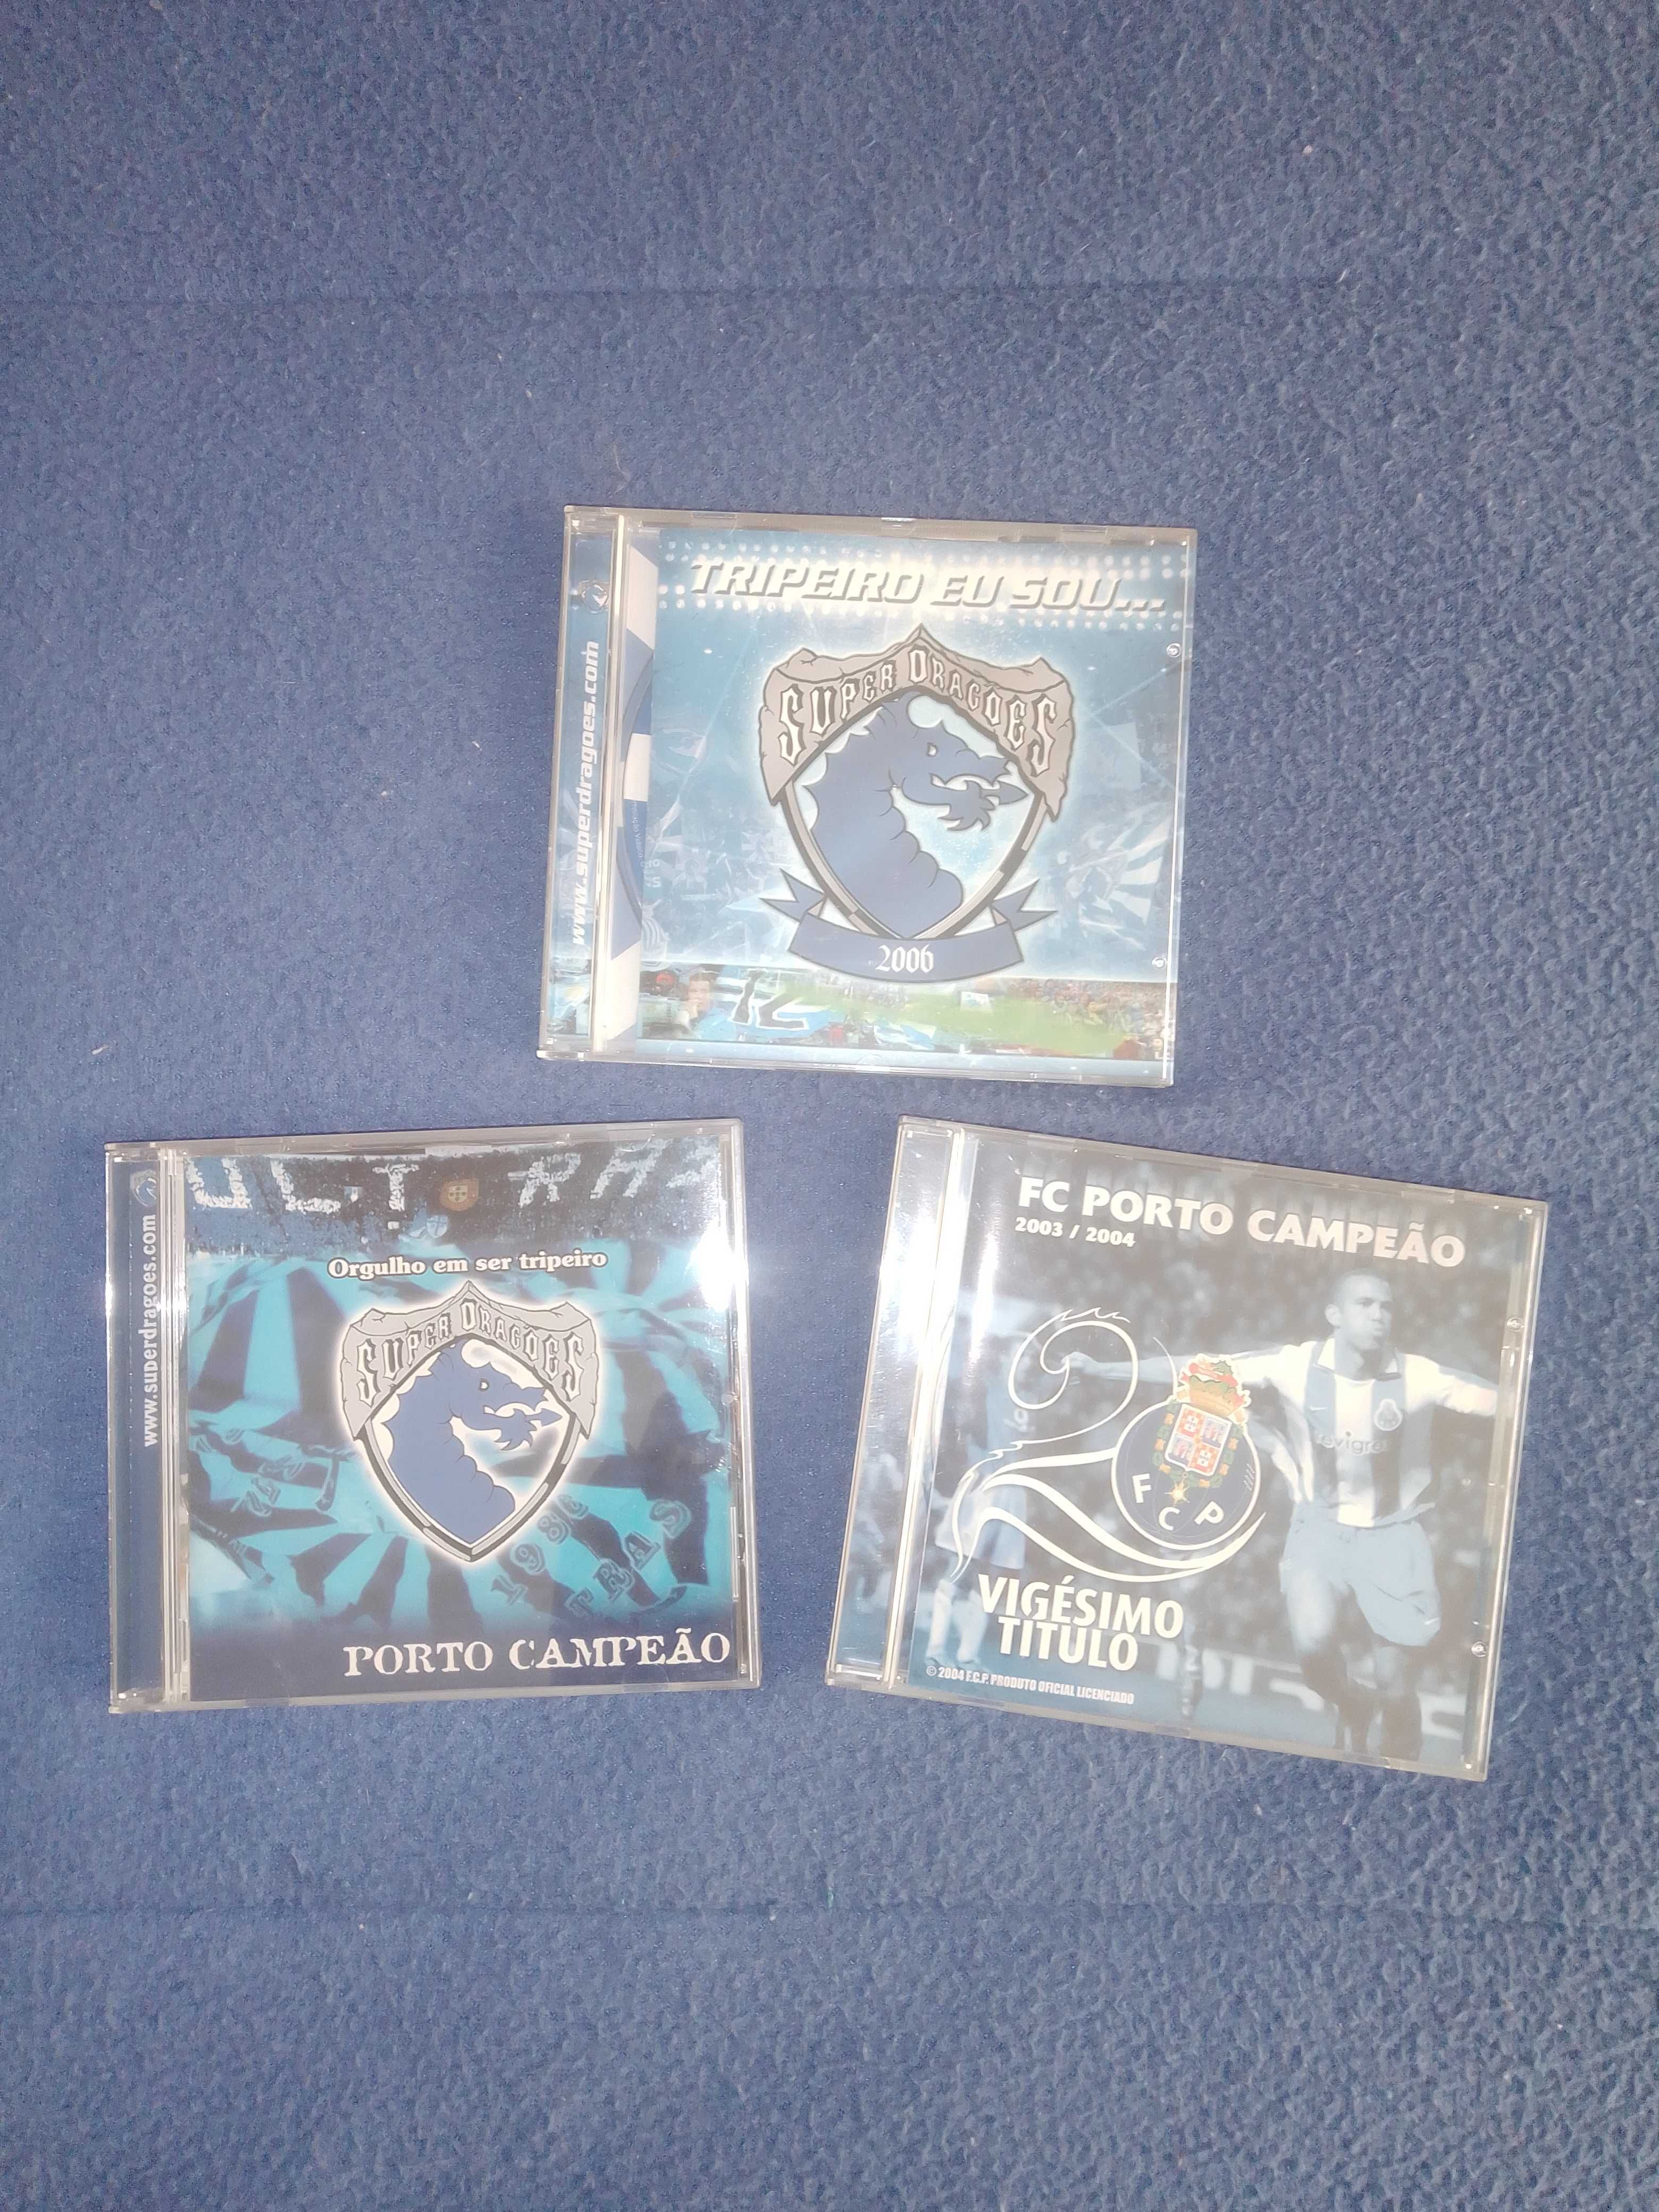 3 CDs de música do FC Porto